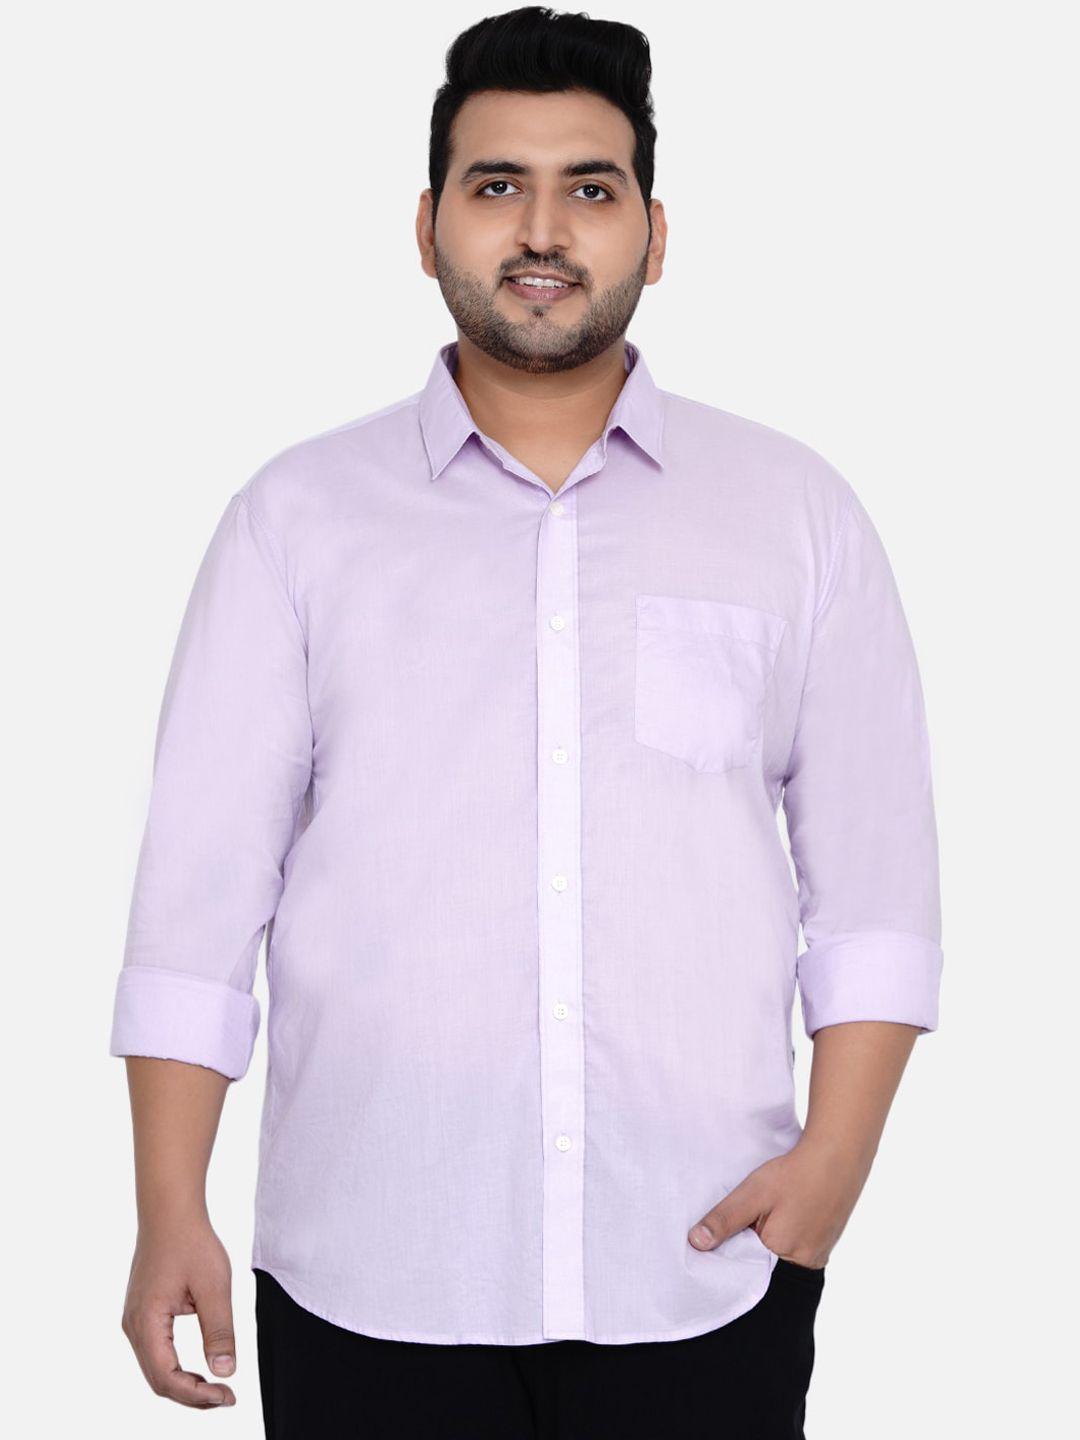 john pride men lavender opaque plus size casual shirt